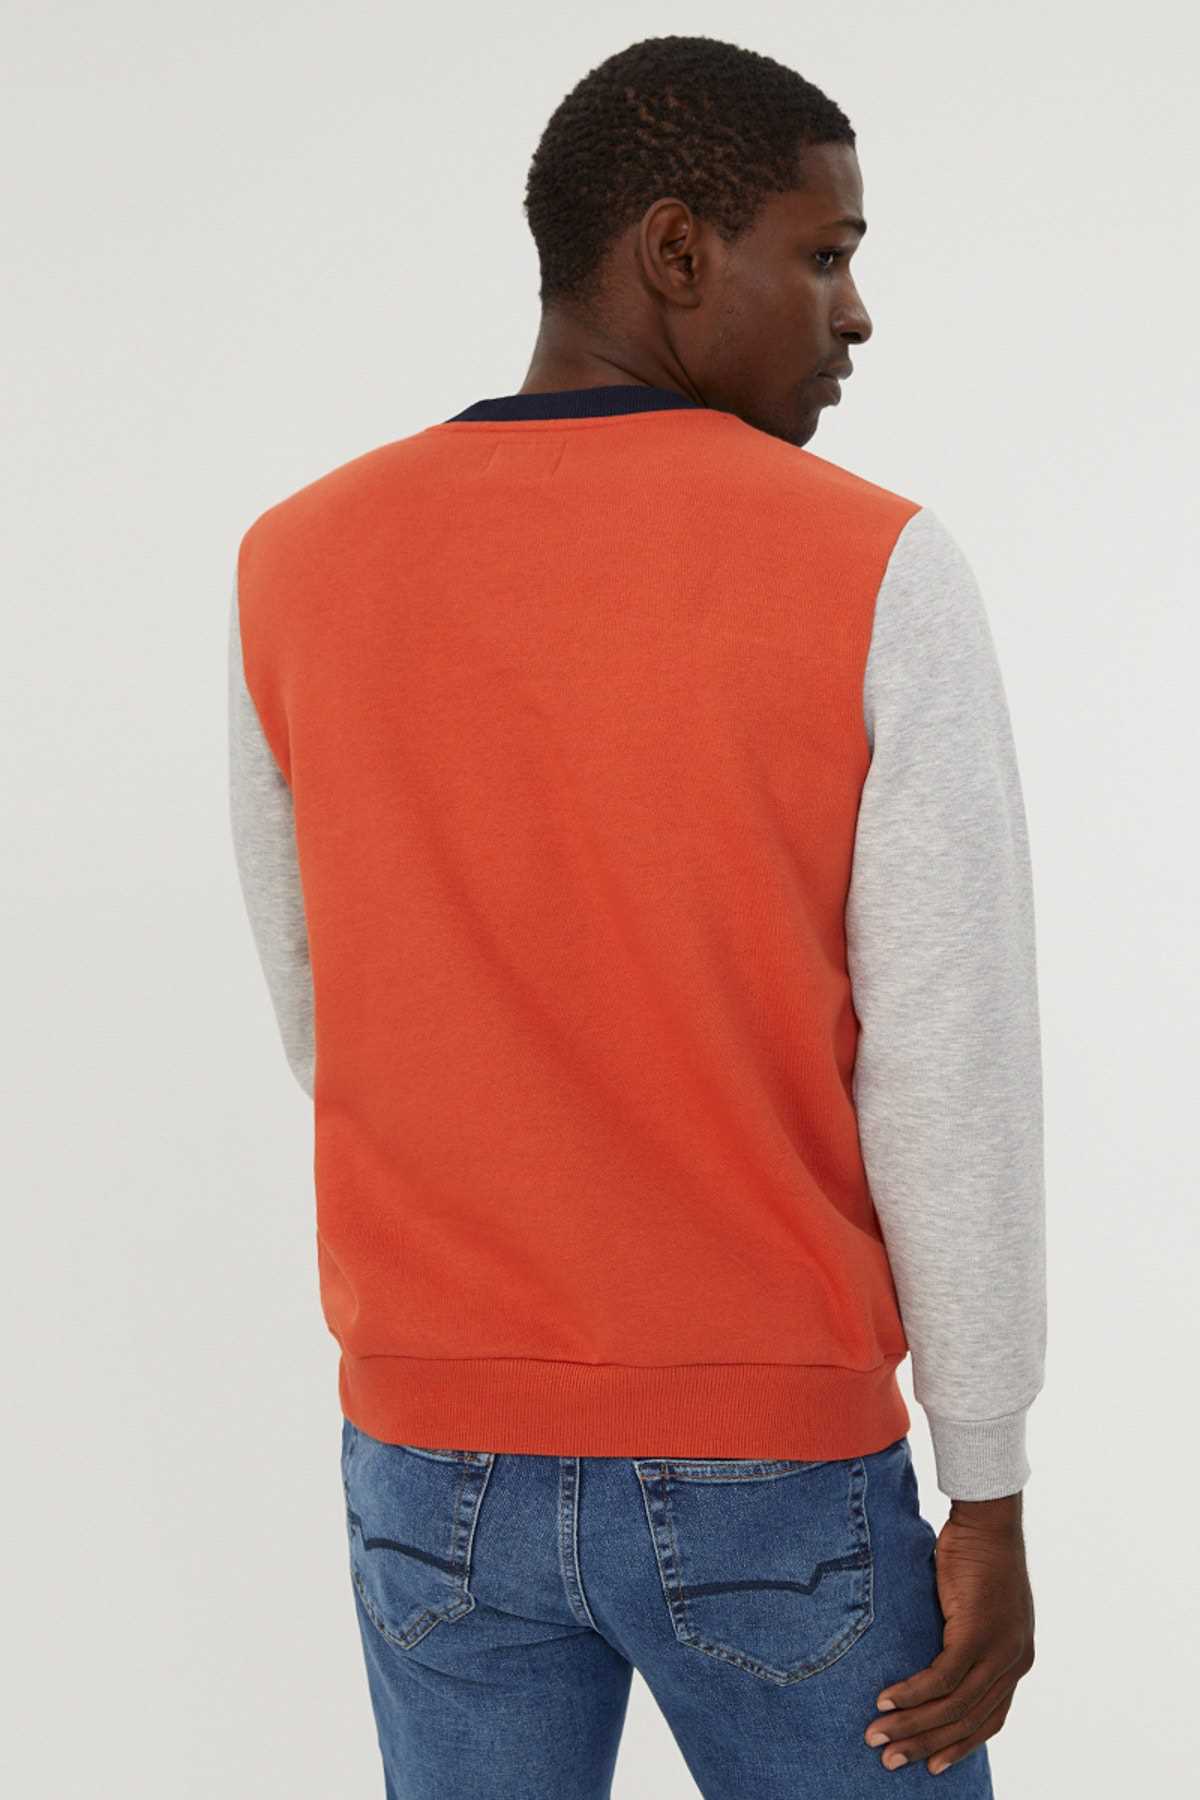 سویشرت مردانه طرح جدید برند Loft رنگ نارنجی ty167968195